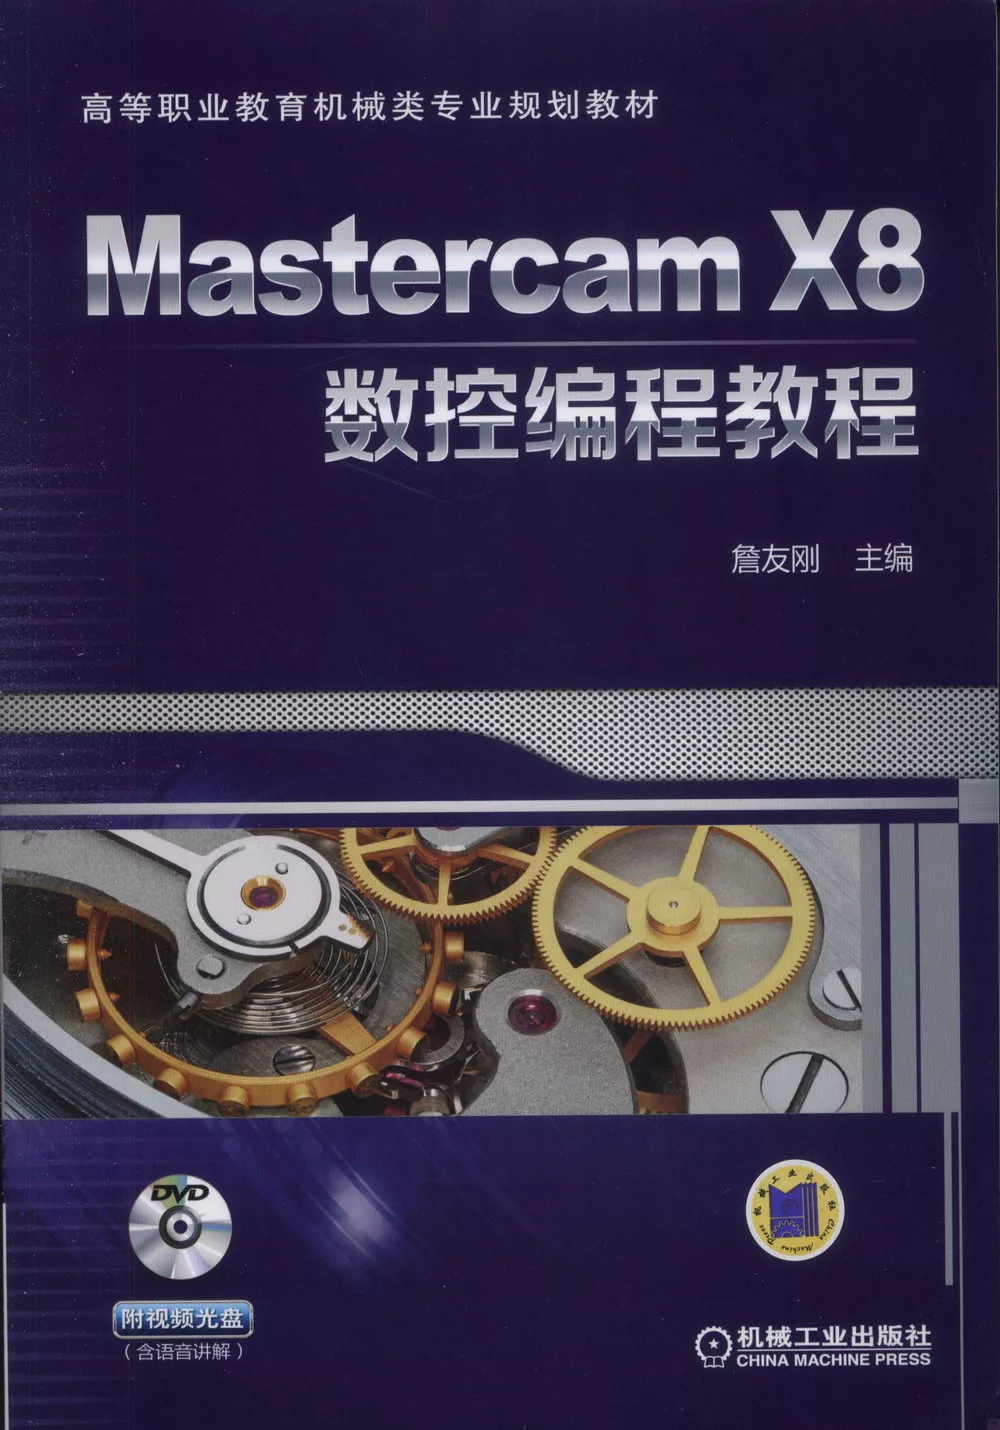 mastercam x8 books